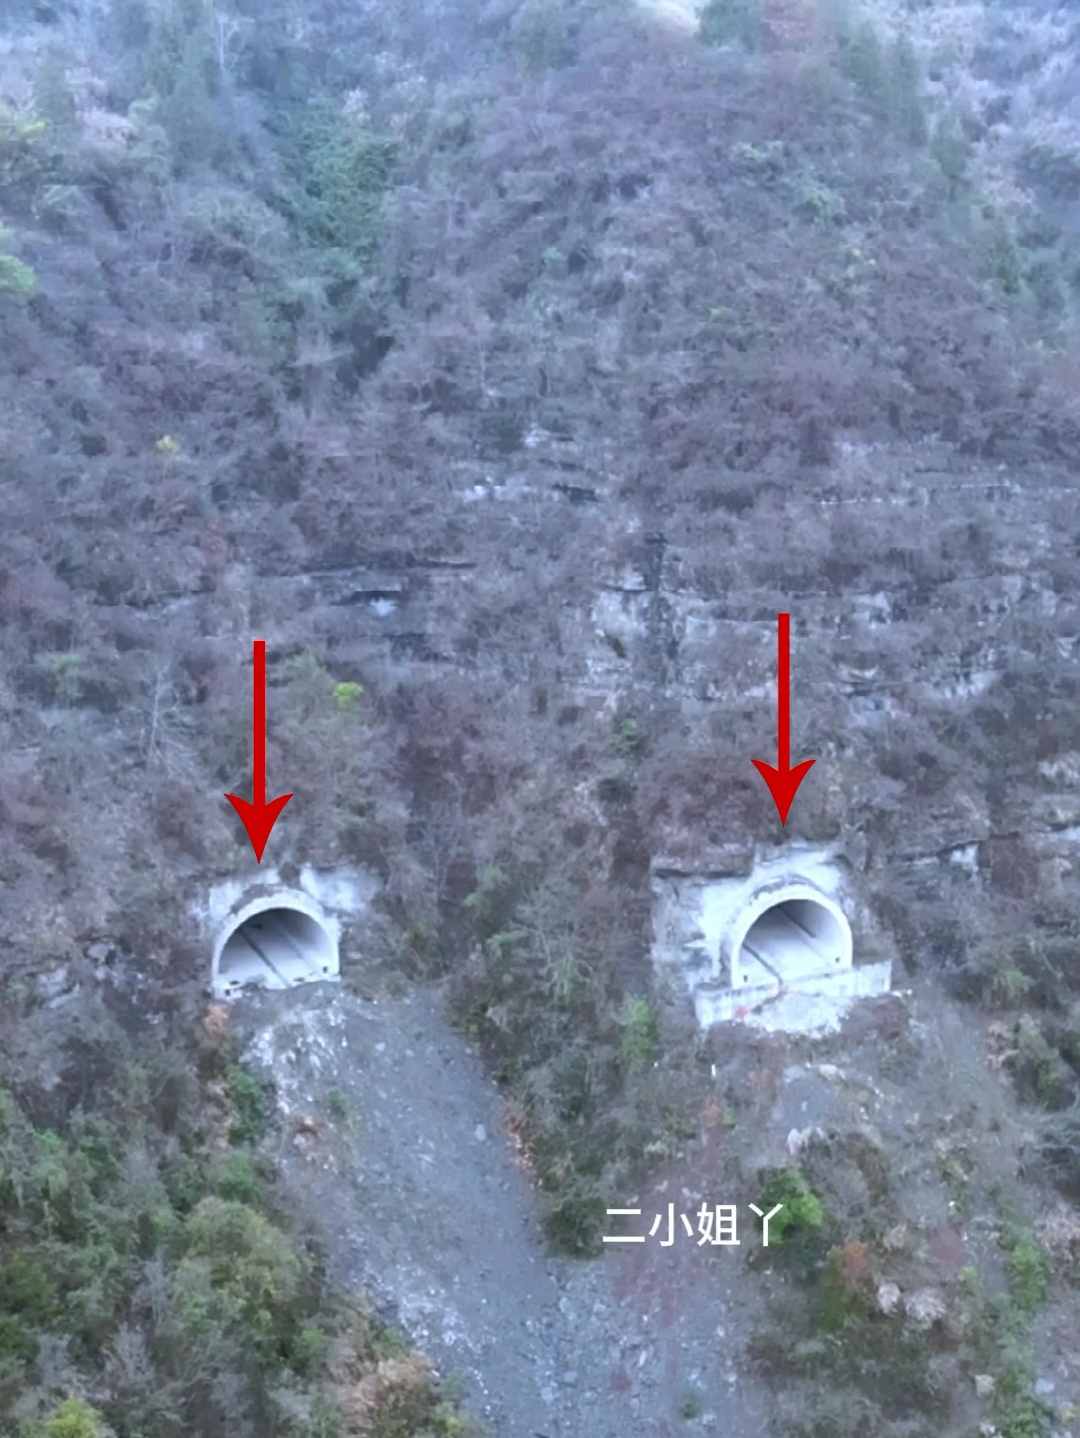 自驾途中，无意间发现修建在半山坡上的两条隧道，看似完工，可令人疑惑的是，隧道修建好了，两端没桥也没路